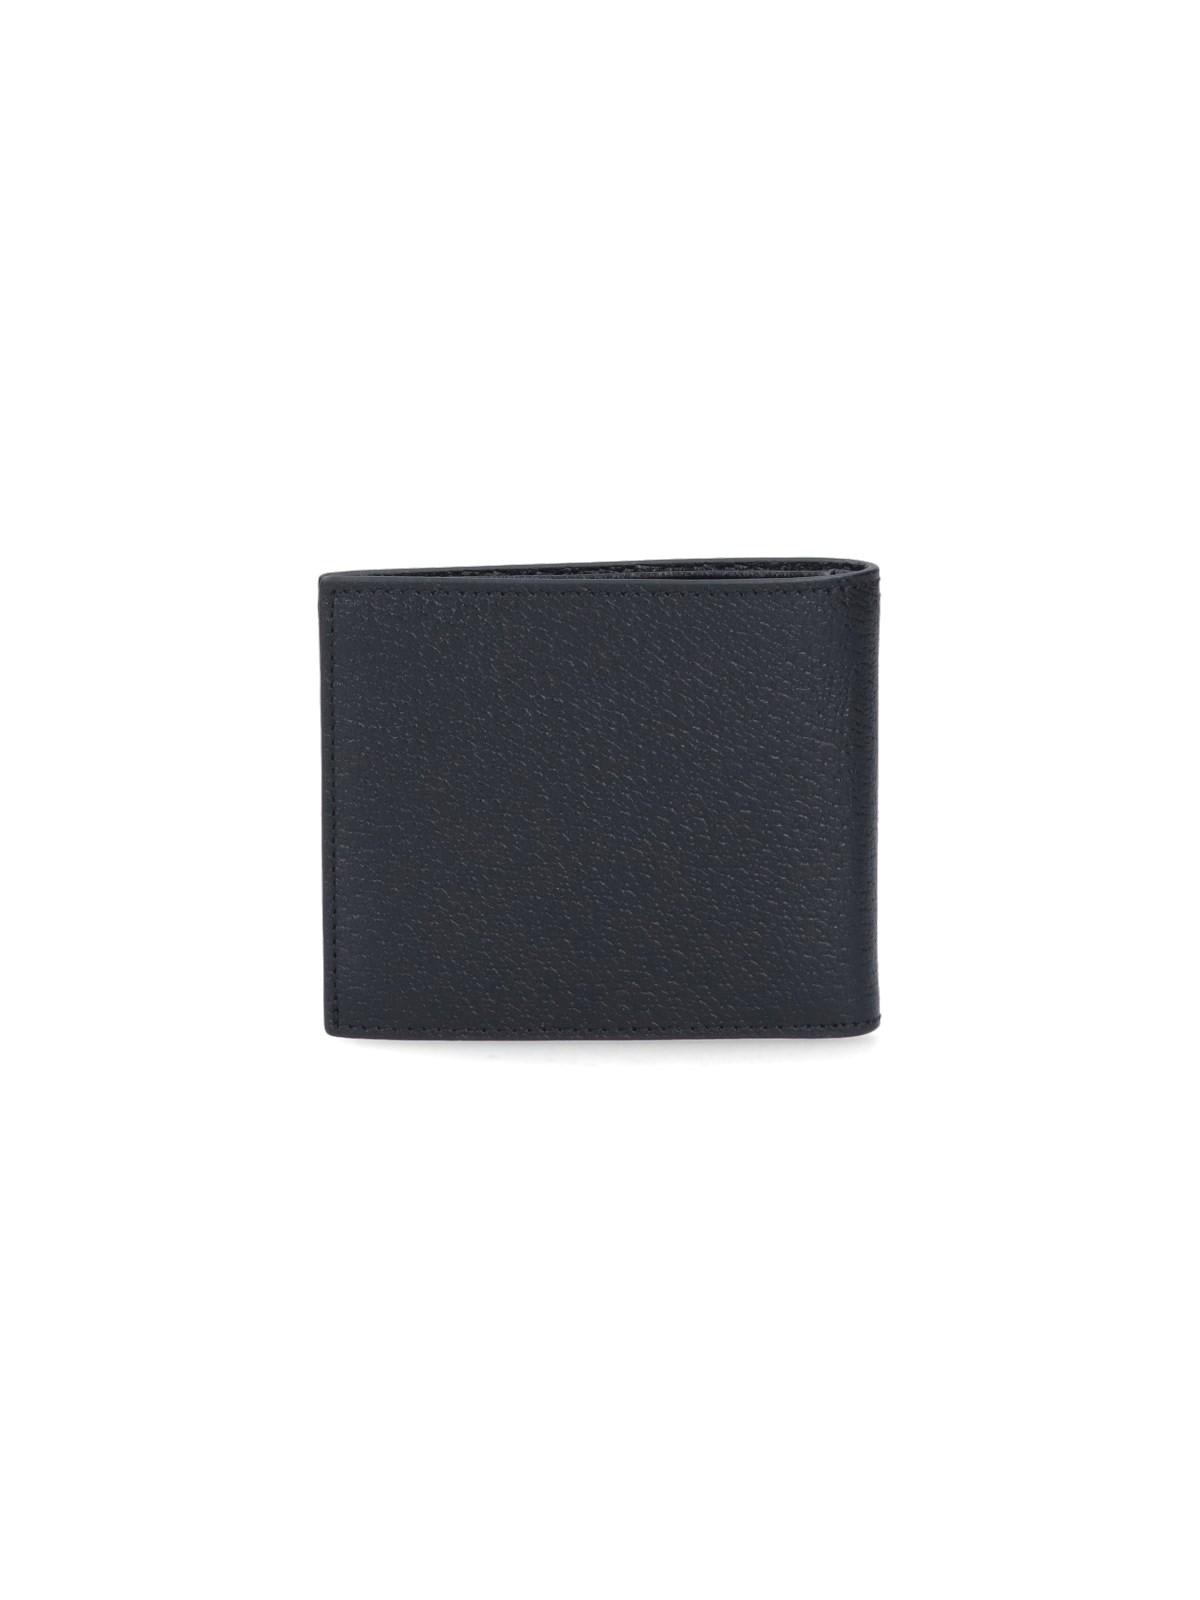 gg-marmont Bi-fold Wallet